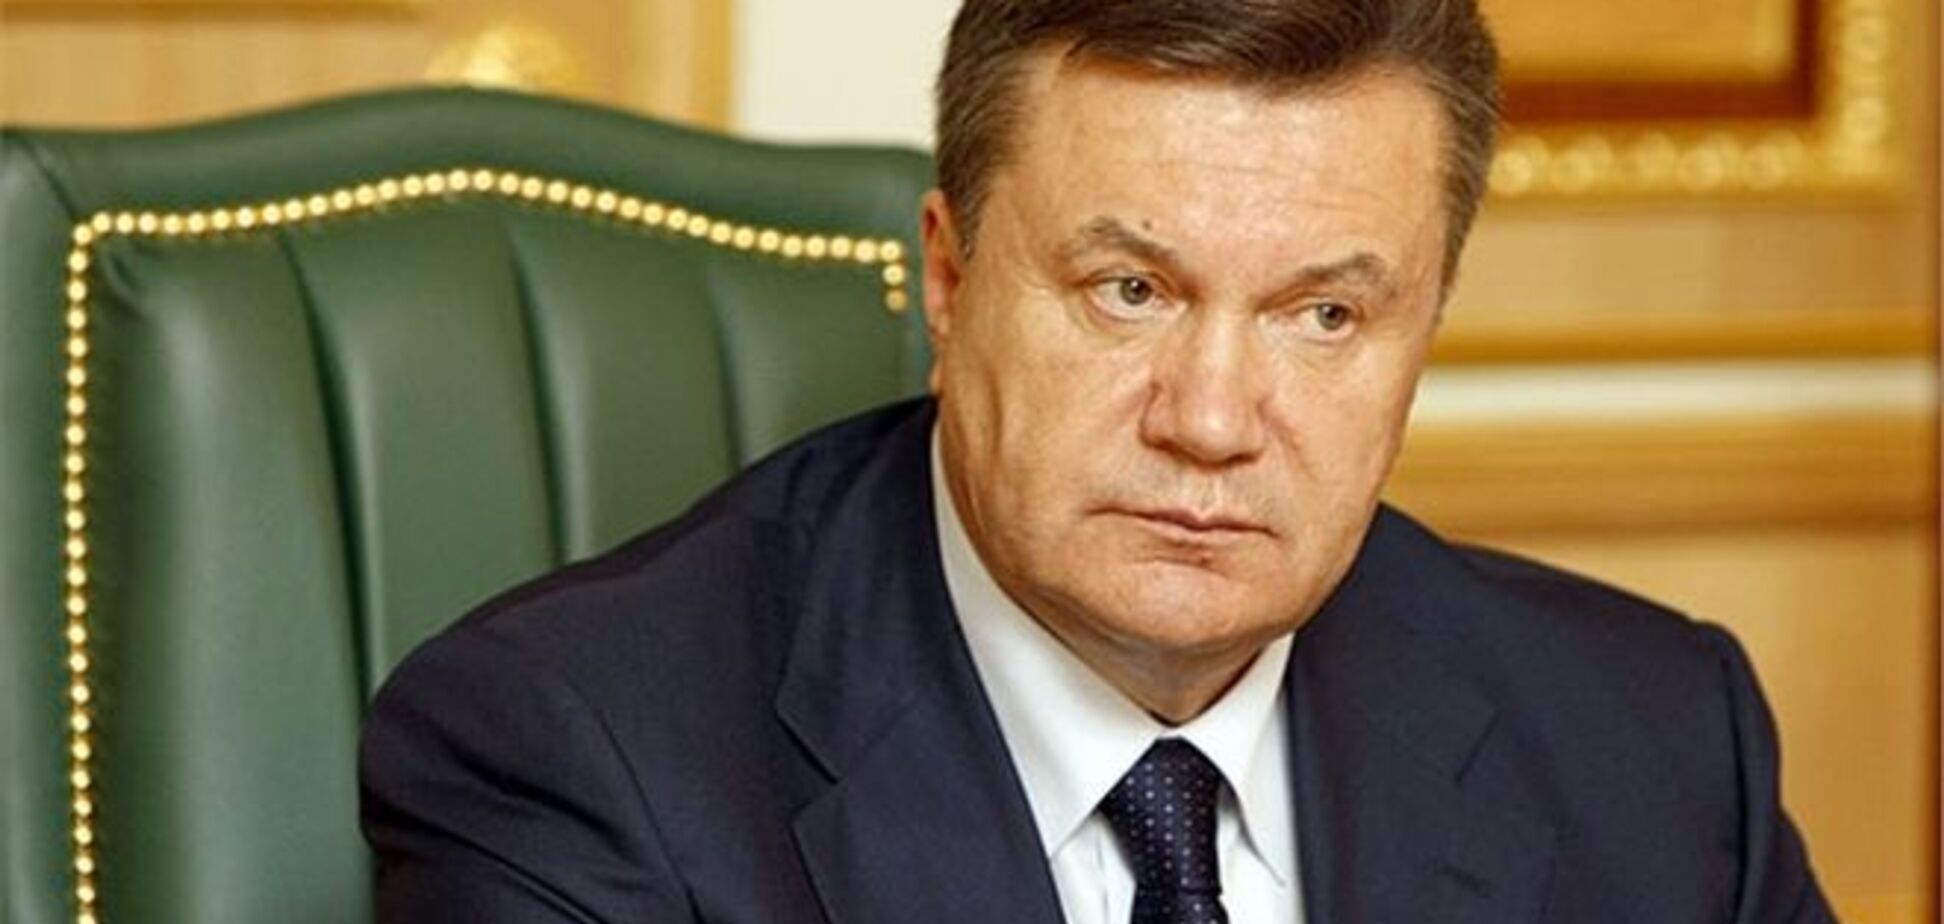 Янукович заводить сторінку в Facebook - ЗМІ